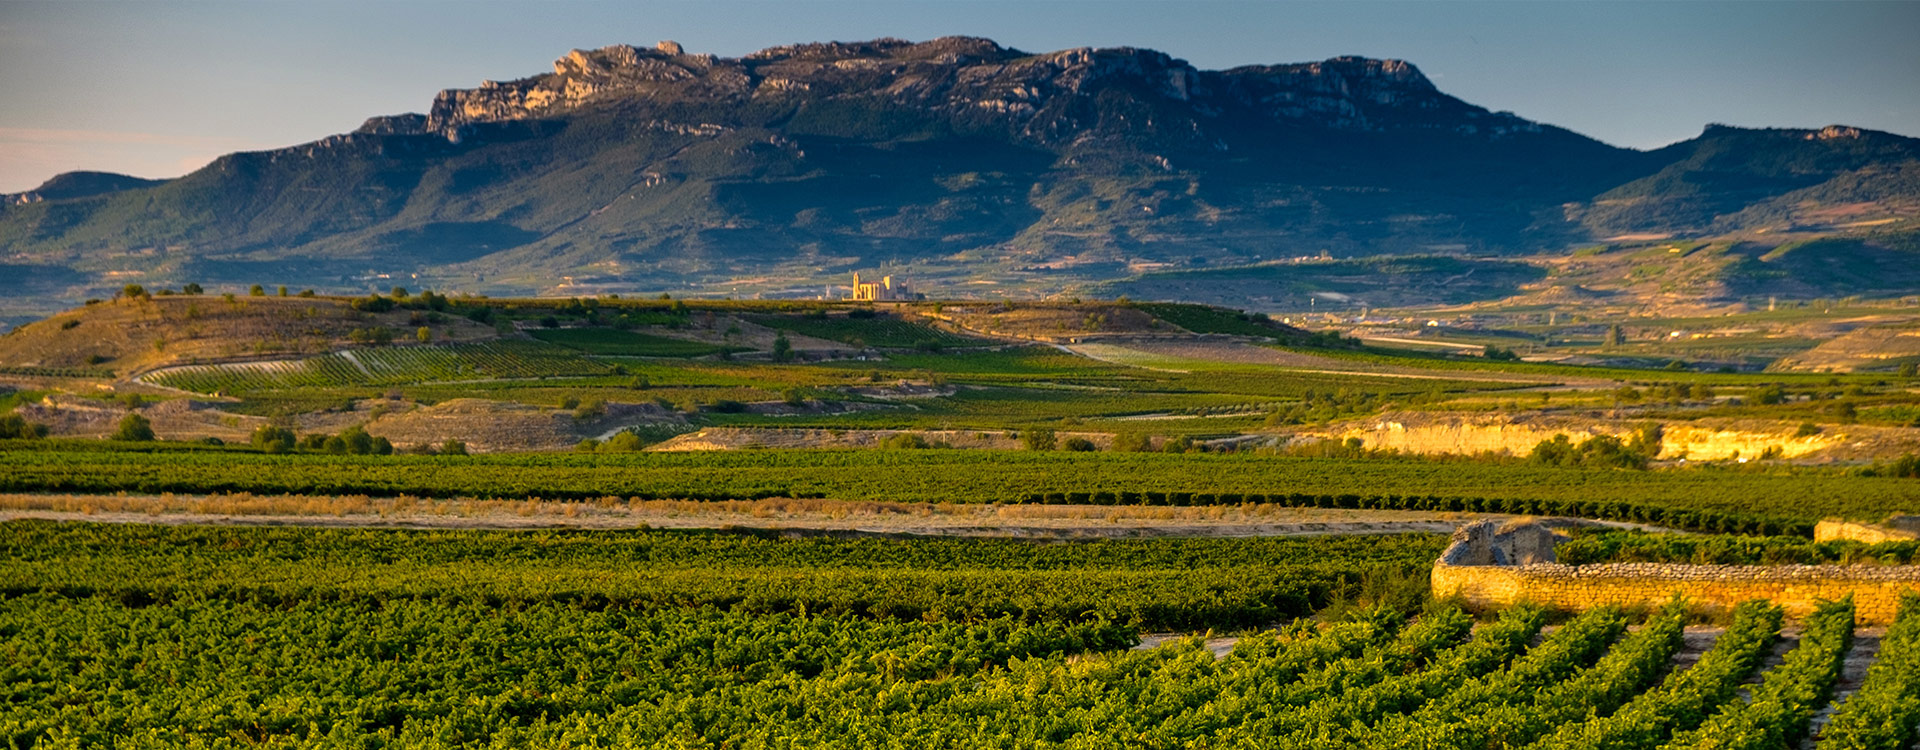 Rioja-Alavesa-backgrowndr.jpg